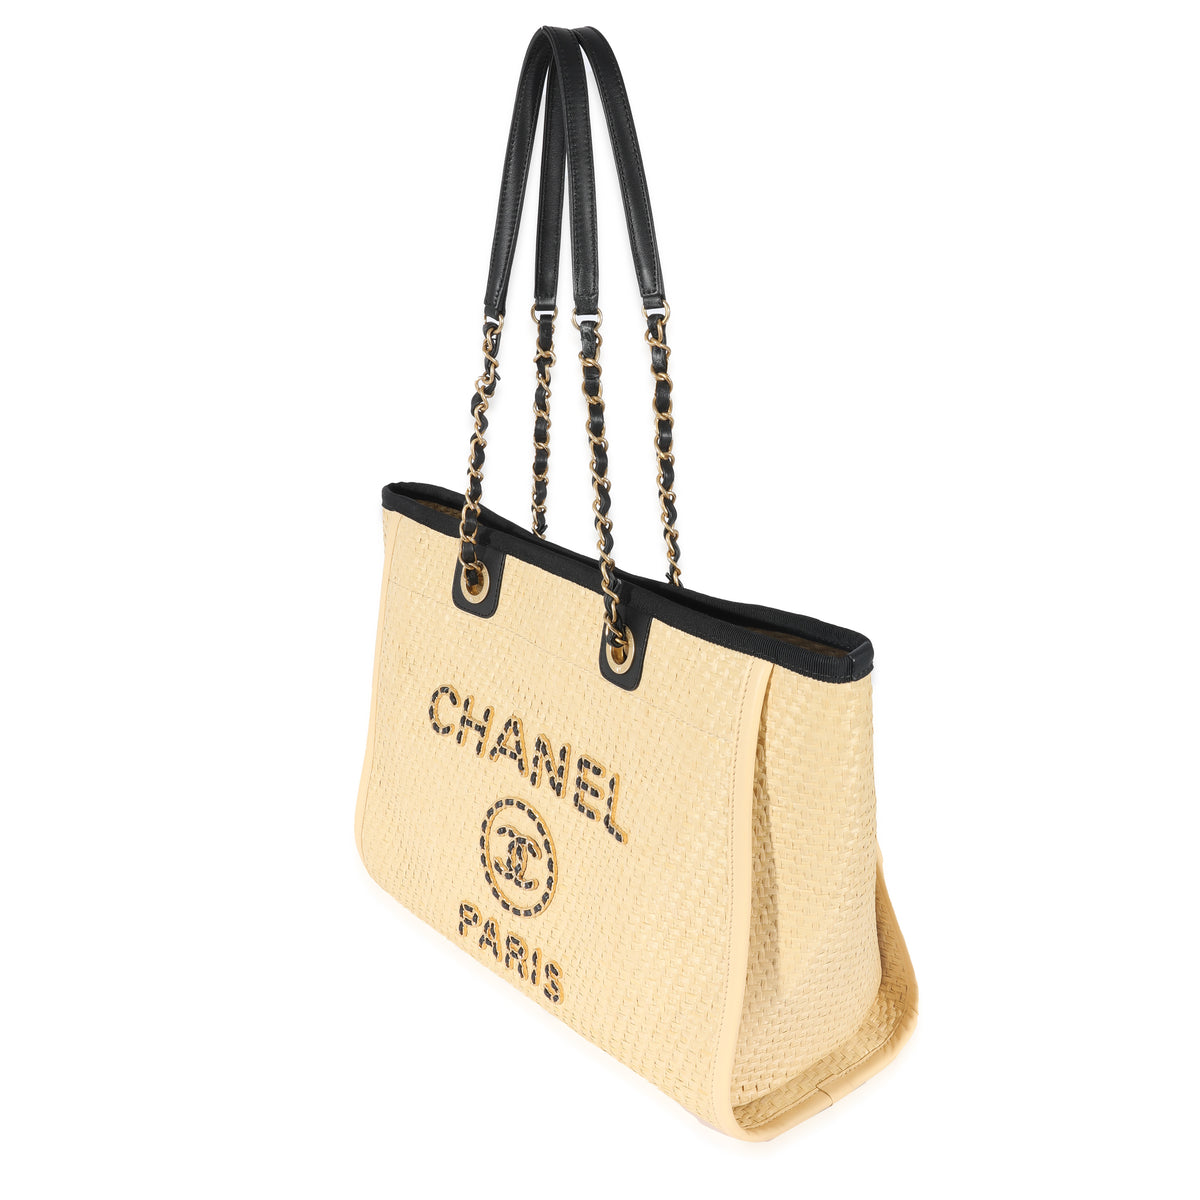 chanel deauville beige gold handbag